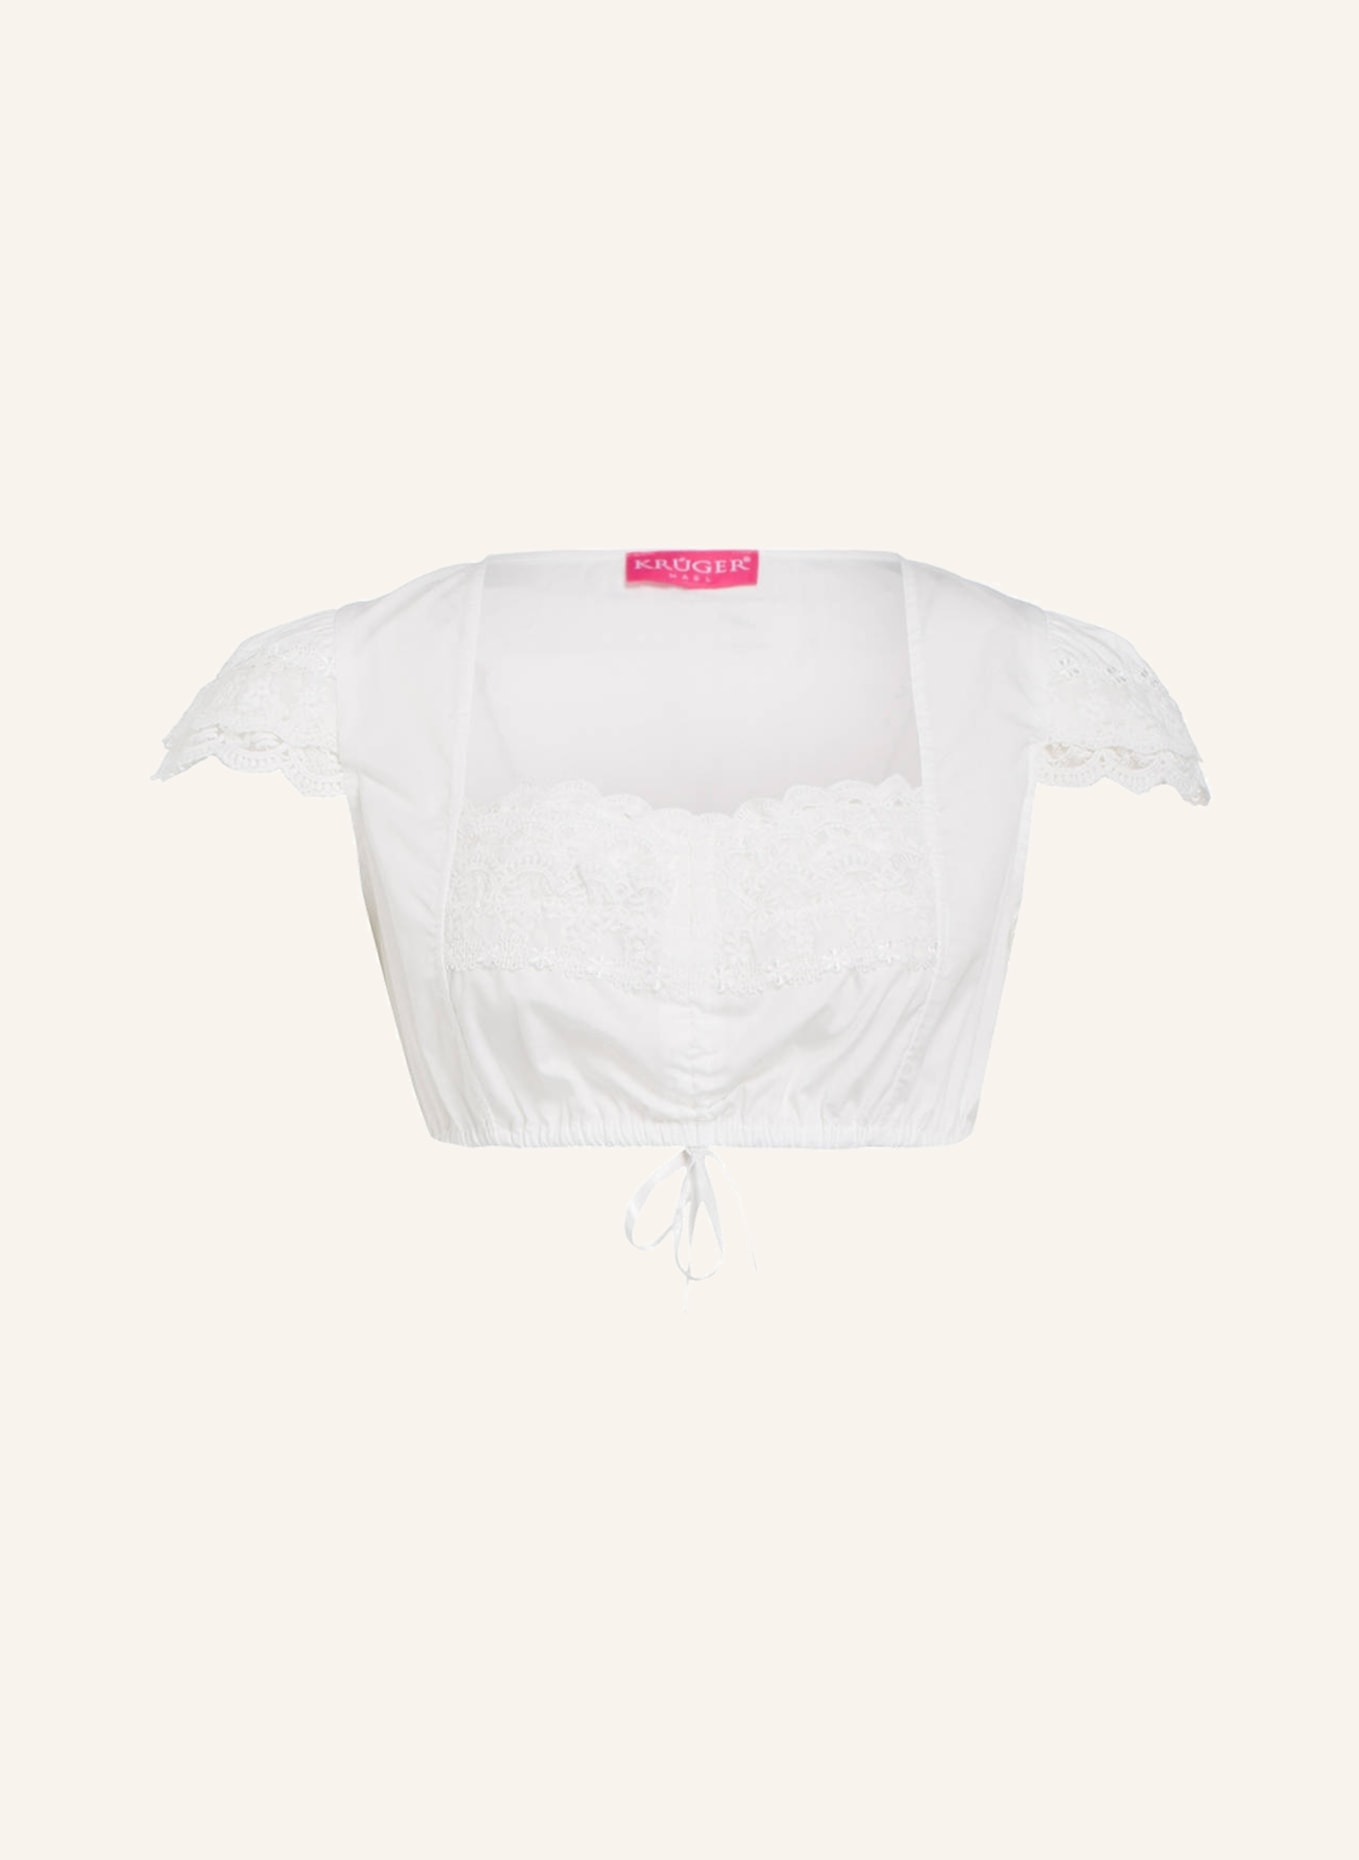 KRÜGER Dirndl blouse JASMIN, Color: WHITE (Image 1)